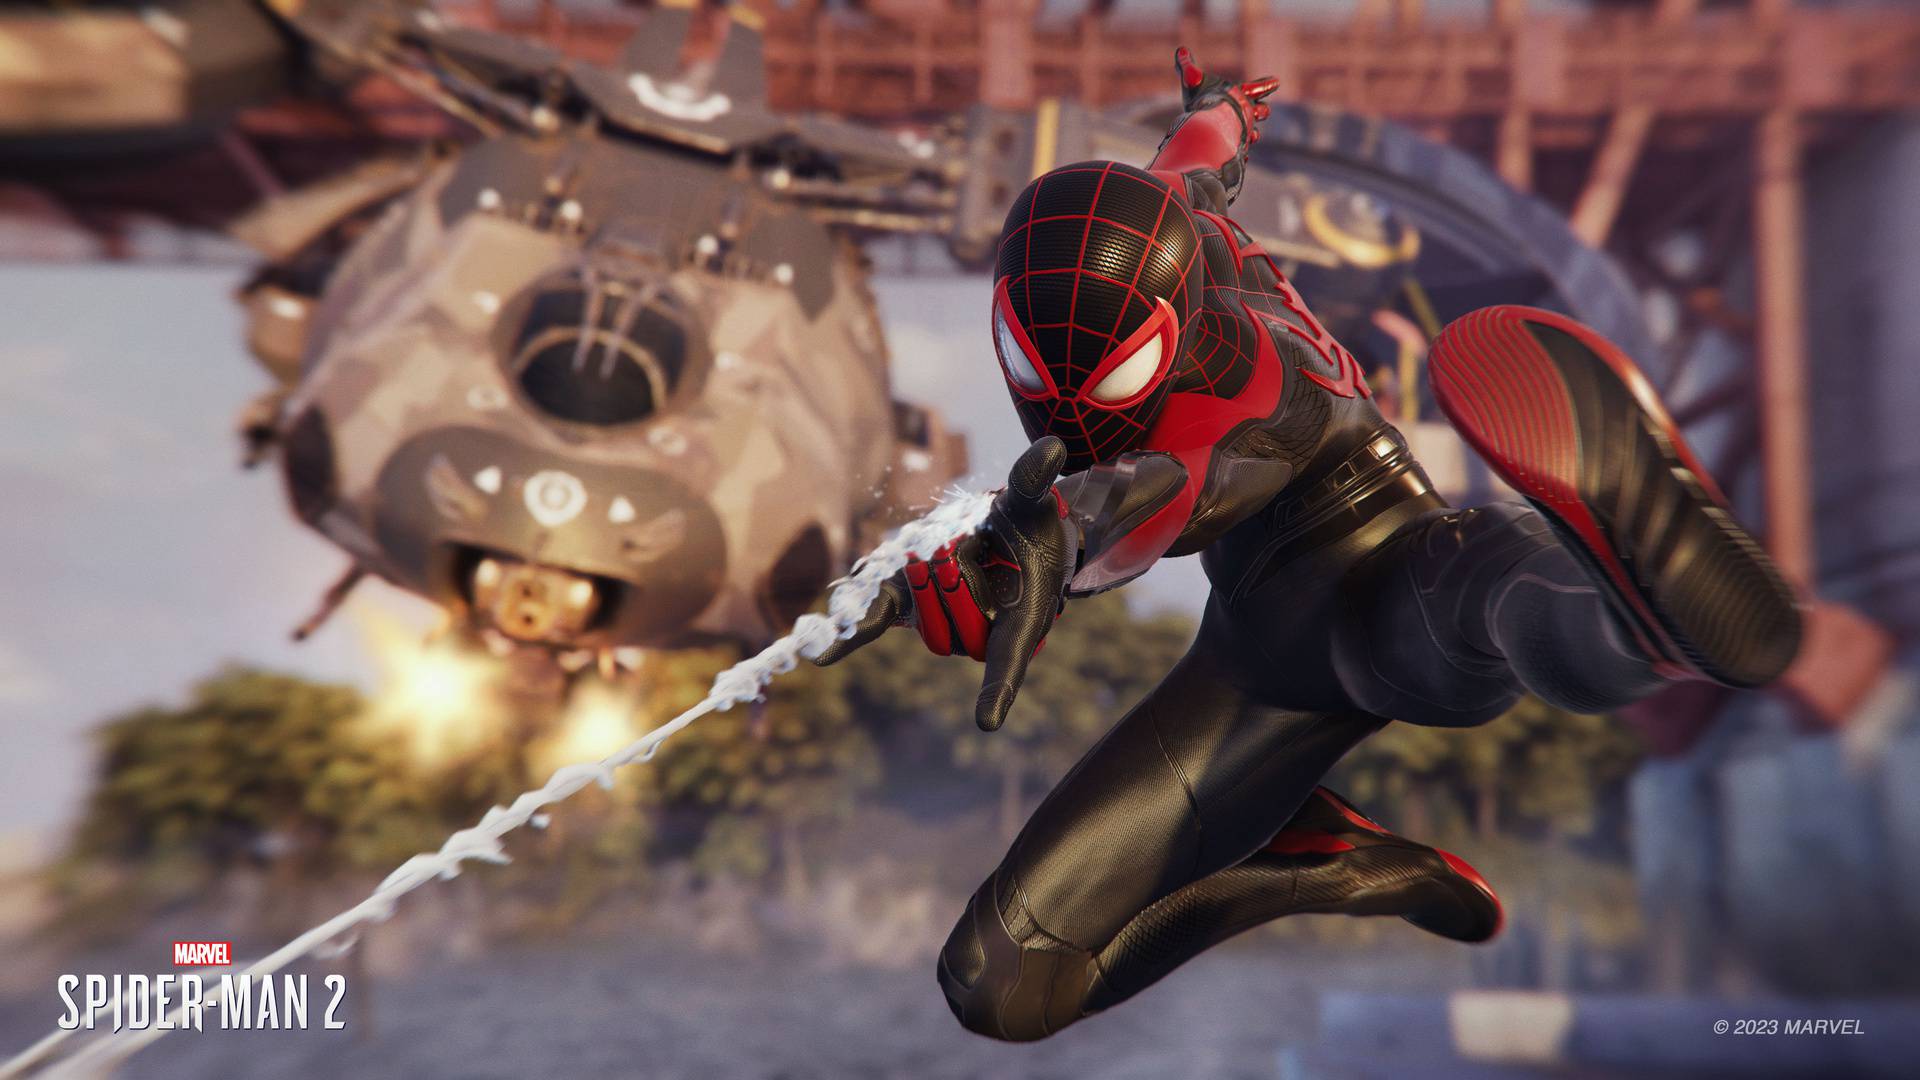 Nova Spider-Man 2 igra dokaz da nisu superjunaci na zalazu već da im trebaju dobre priče